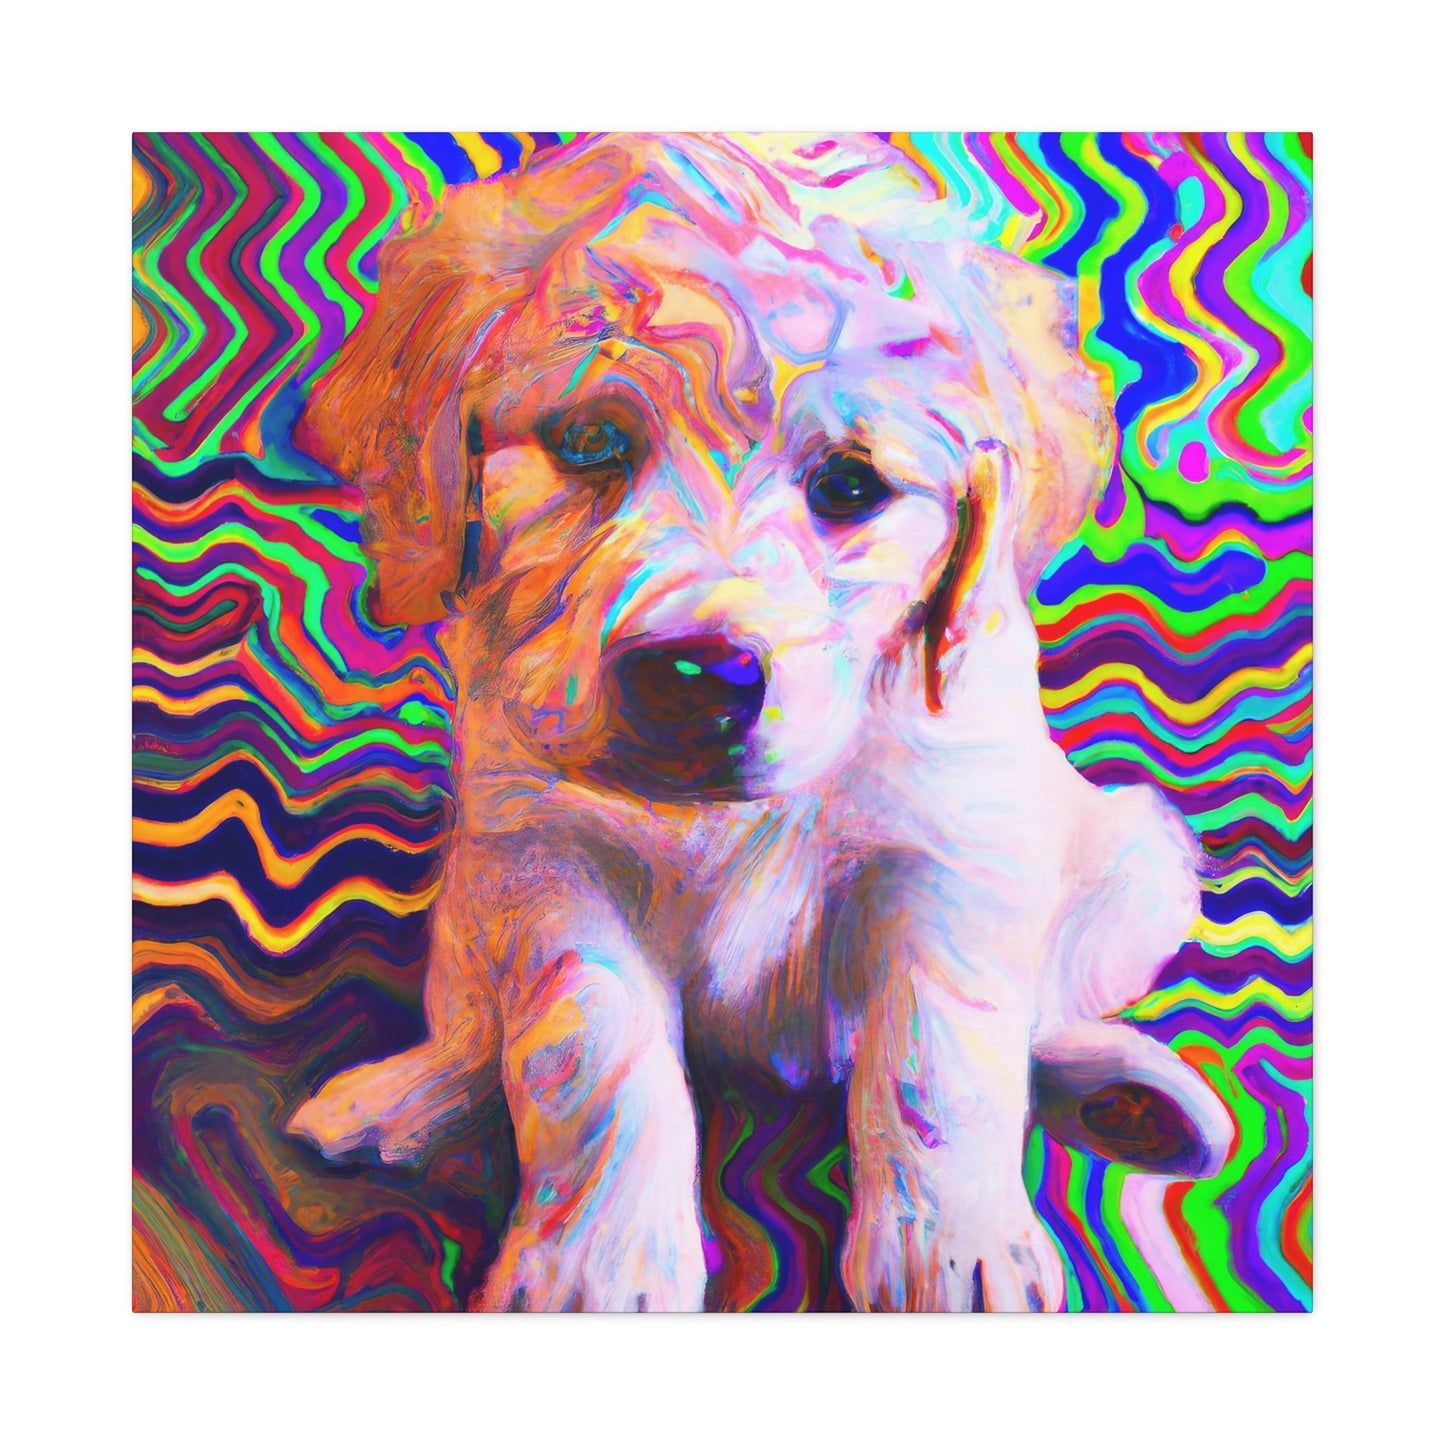 Aldemar von Hammerstein Golden Retriever Puppy - Canvas